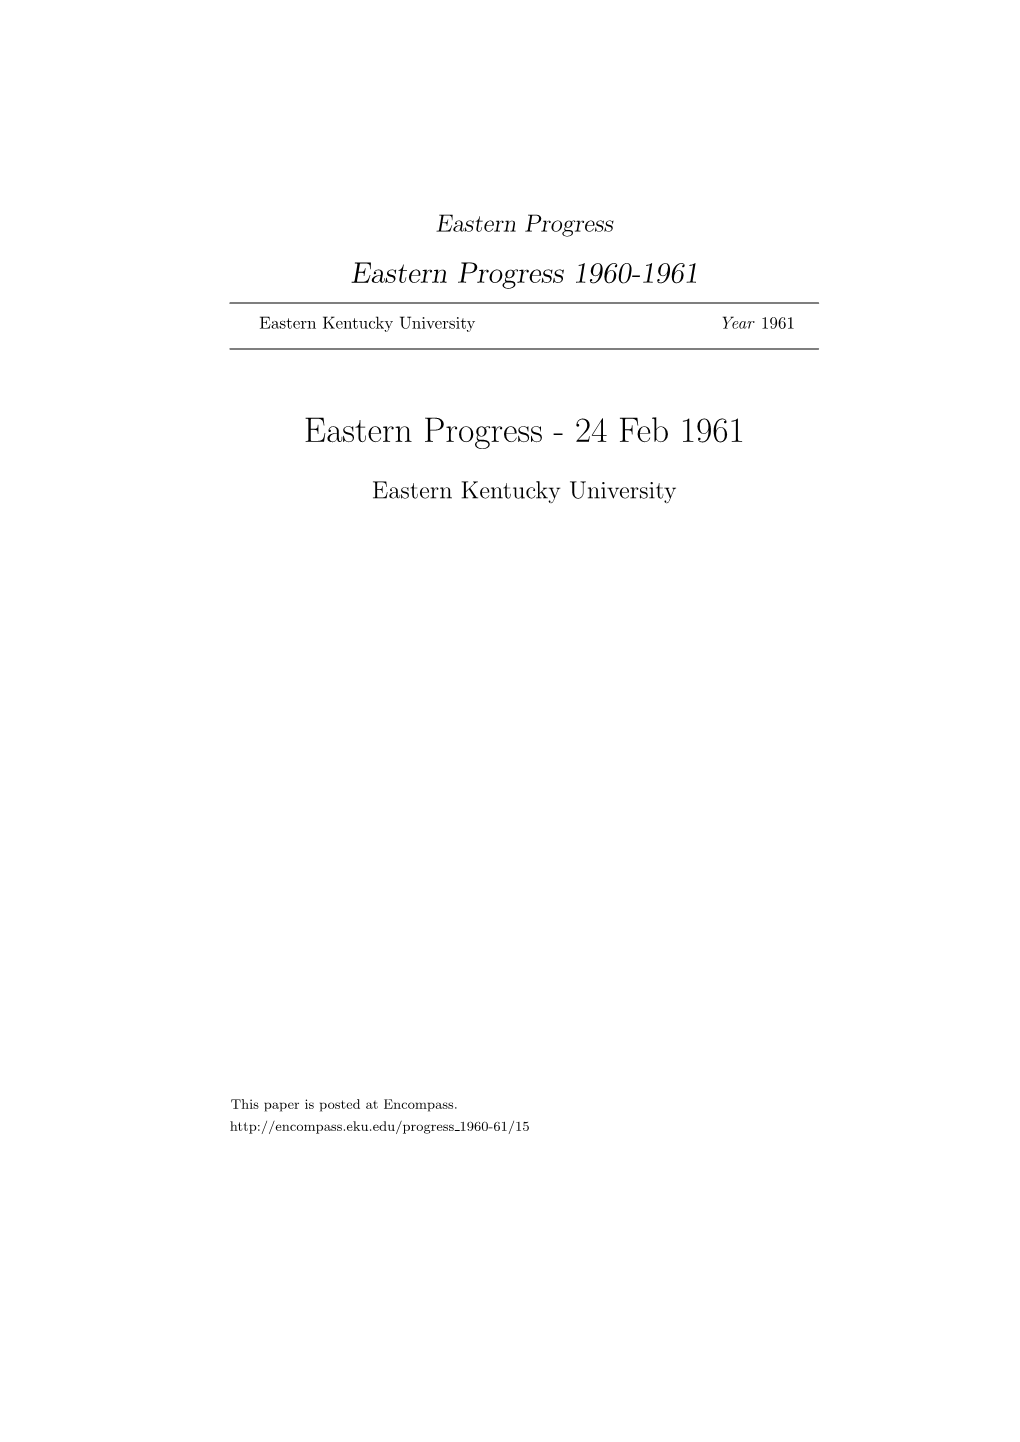 Eastern Progress Eastern Progress 1960-1961